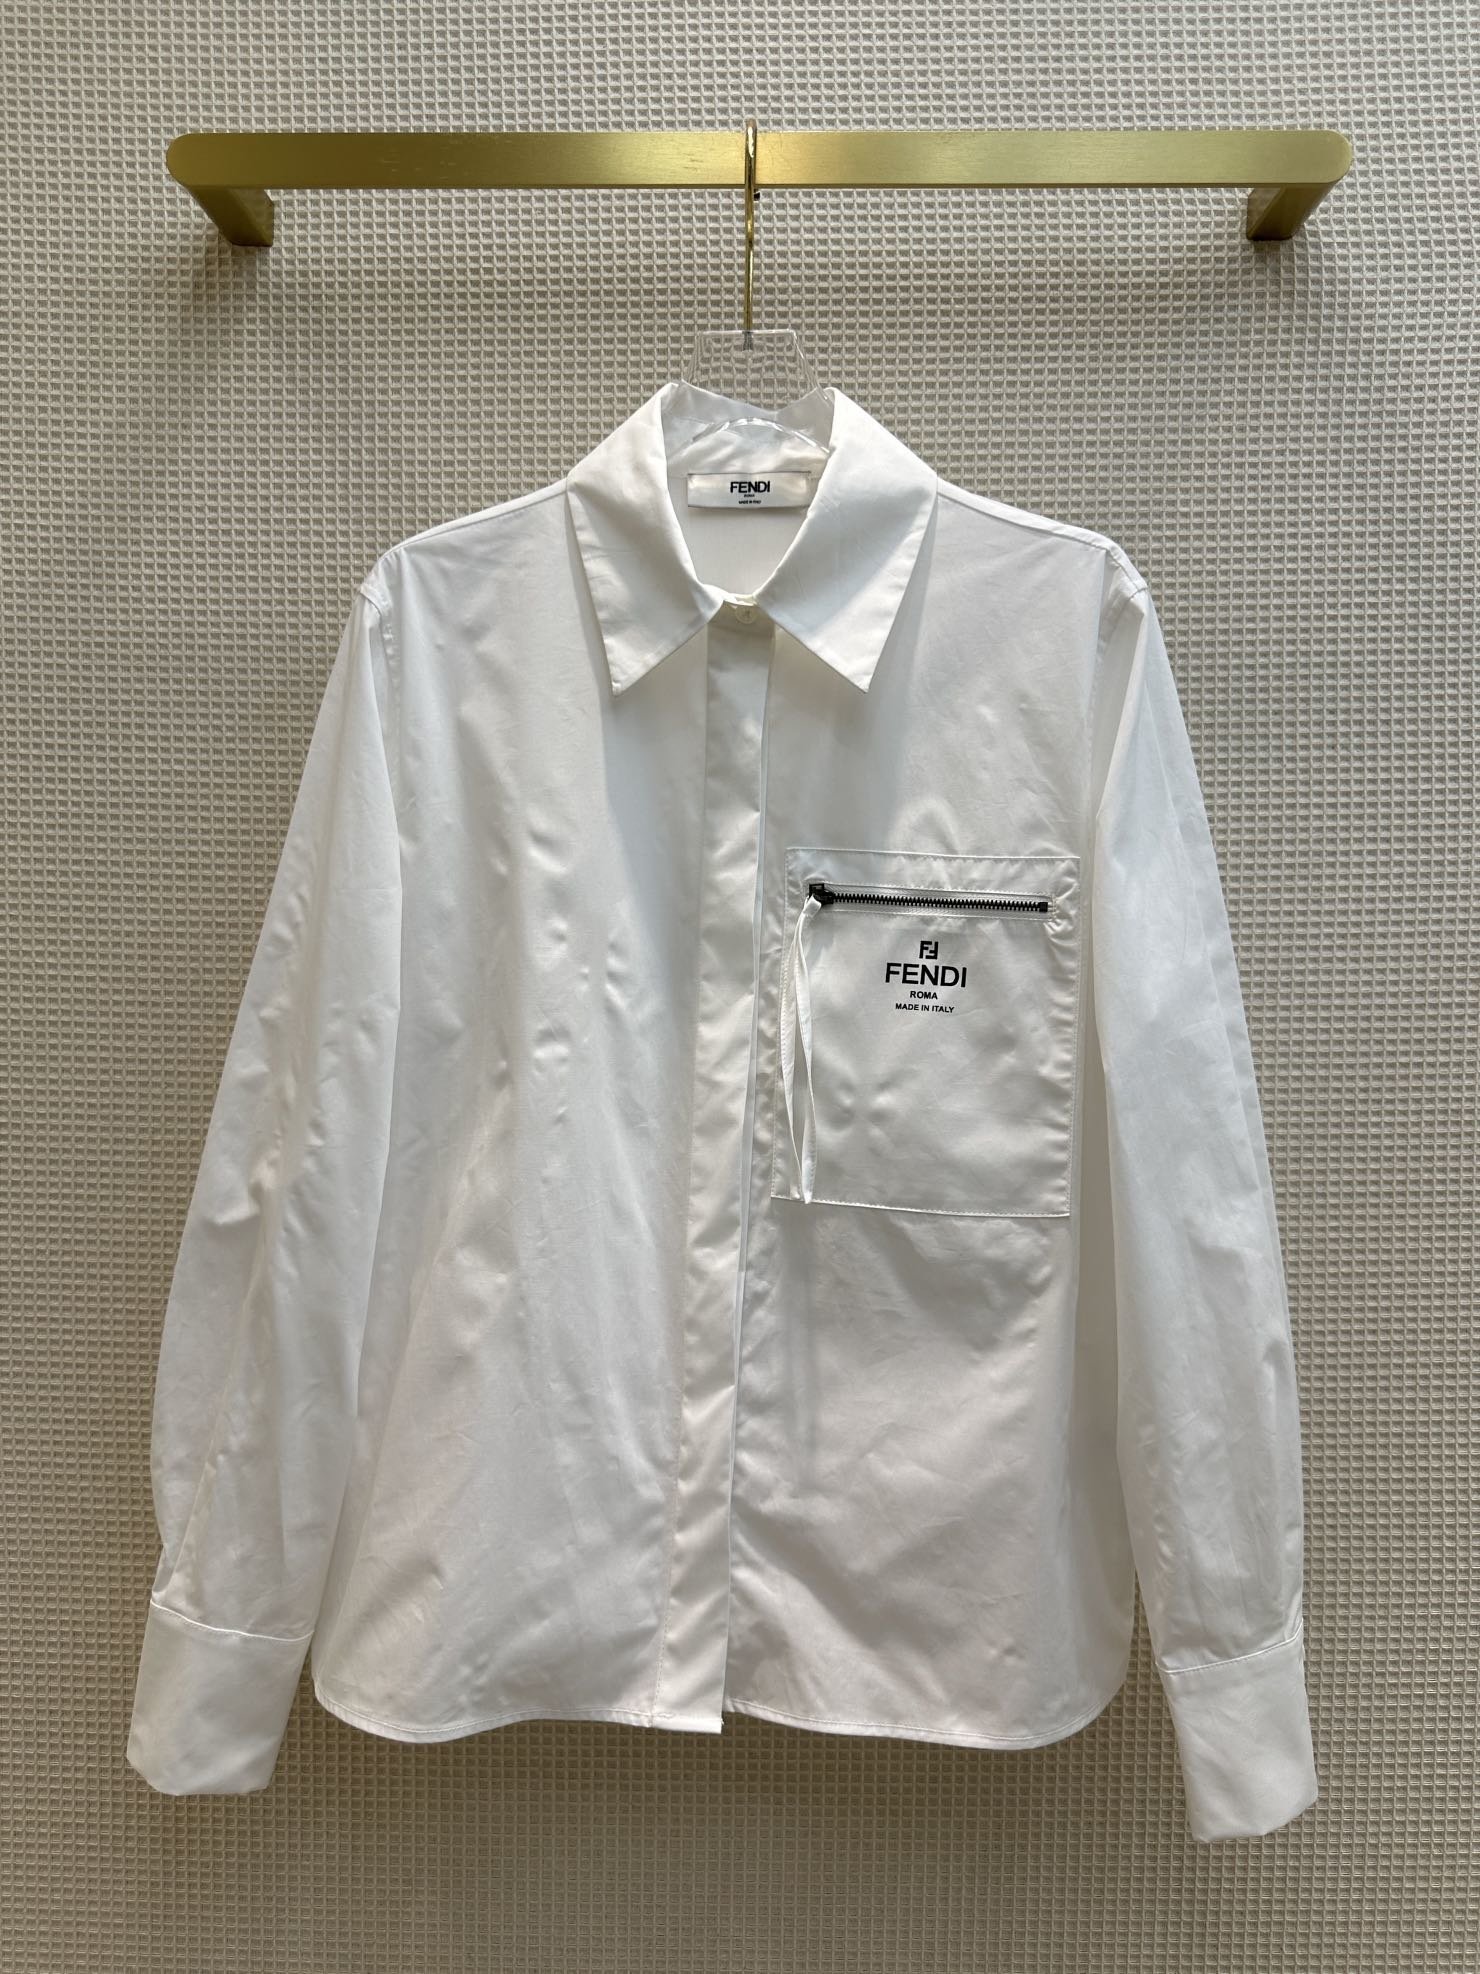 FD23早秋口袋设计白衬衫小翻领简洁廓形的设计必备单品时髦又高级对身材没有限制性轻松藏肉显瘦基础版型对身